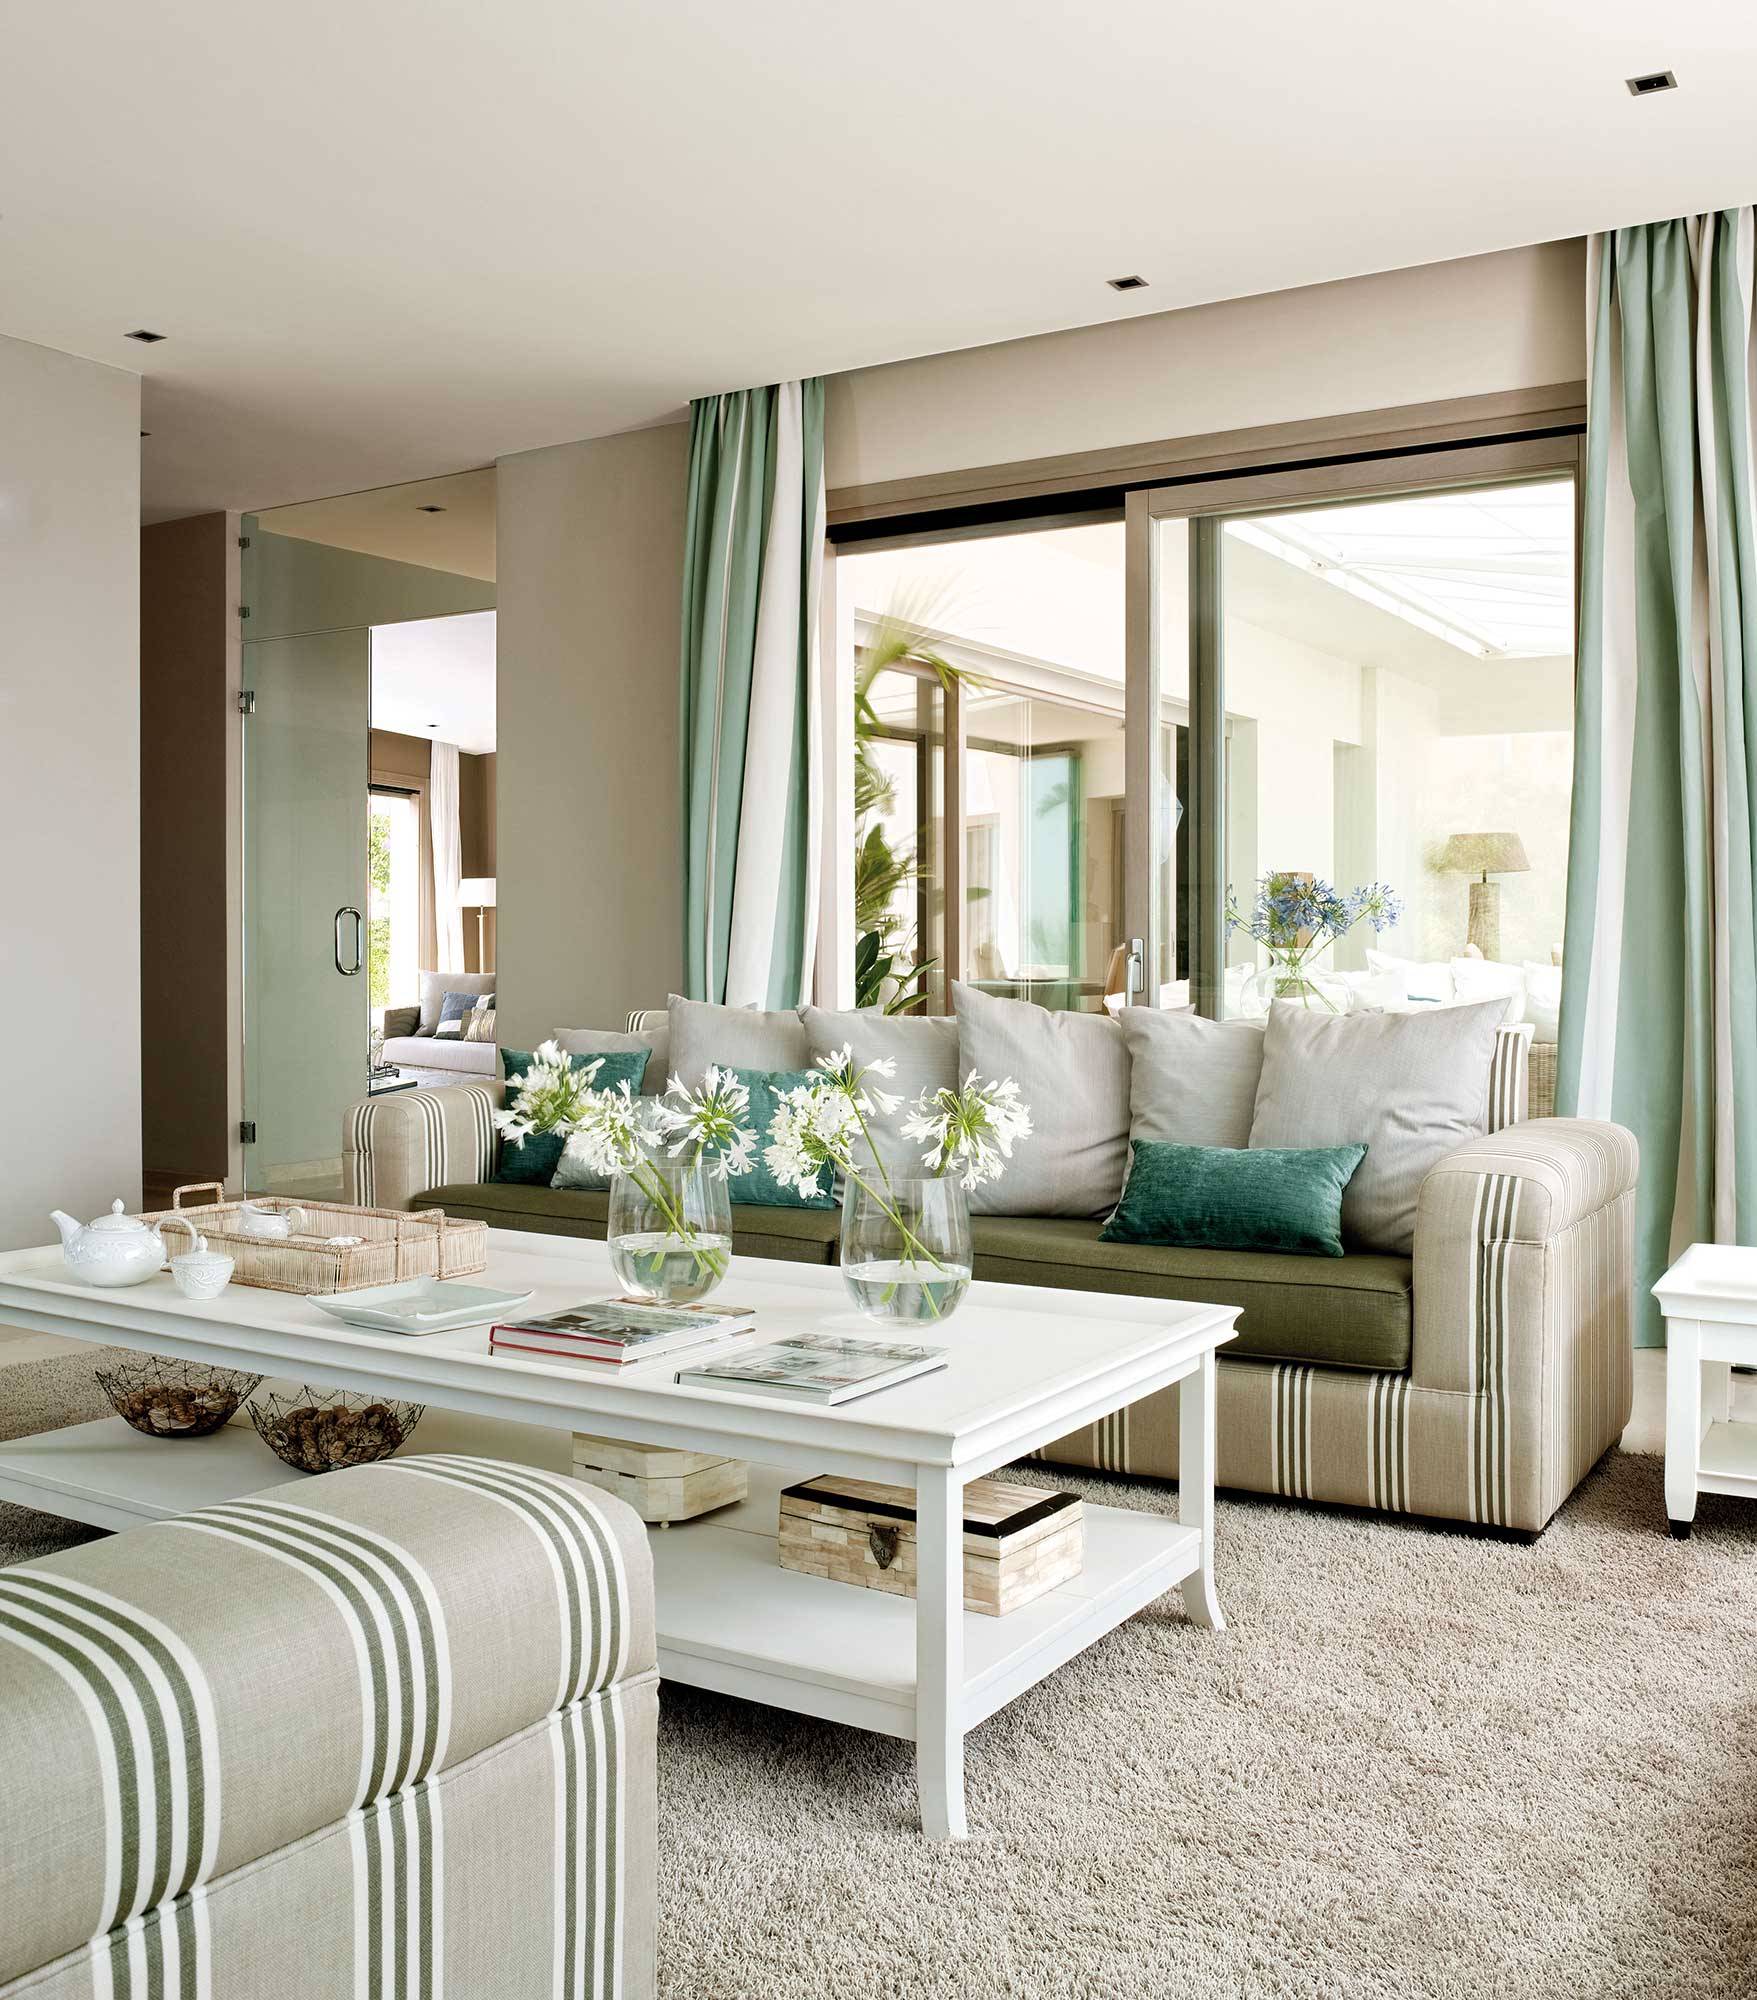 Salón con dos sofás enfrentados tapizados lisos y a rayas_00281820